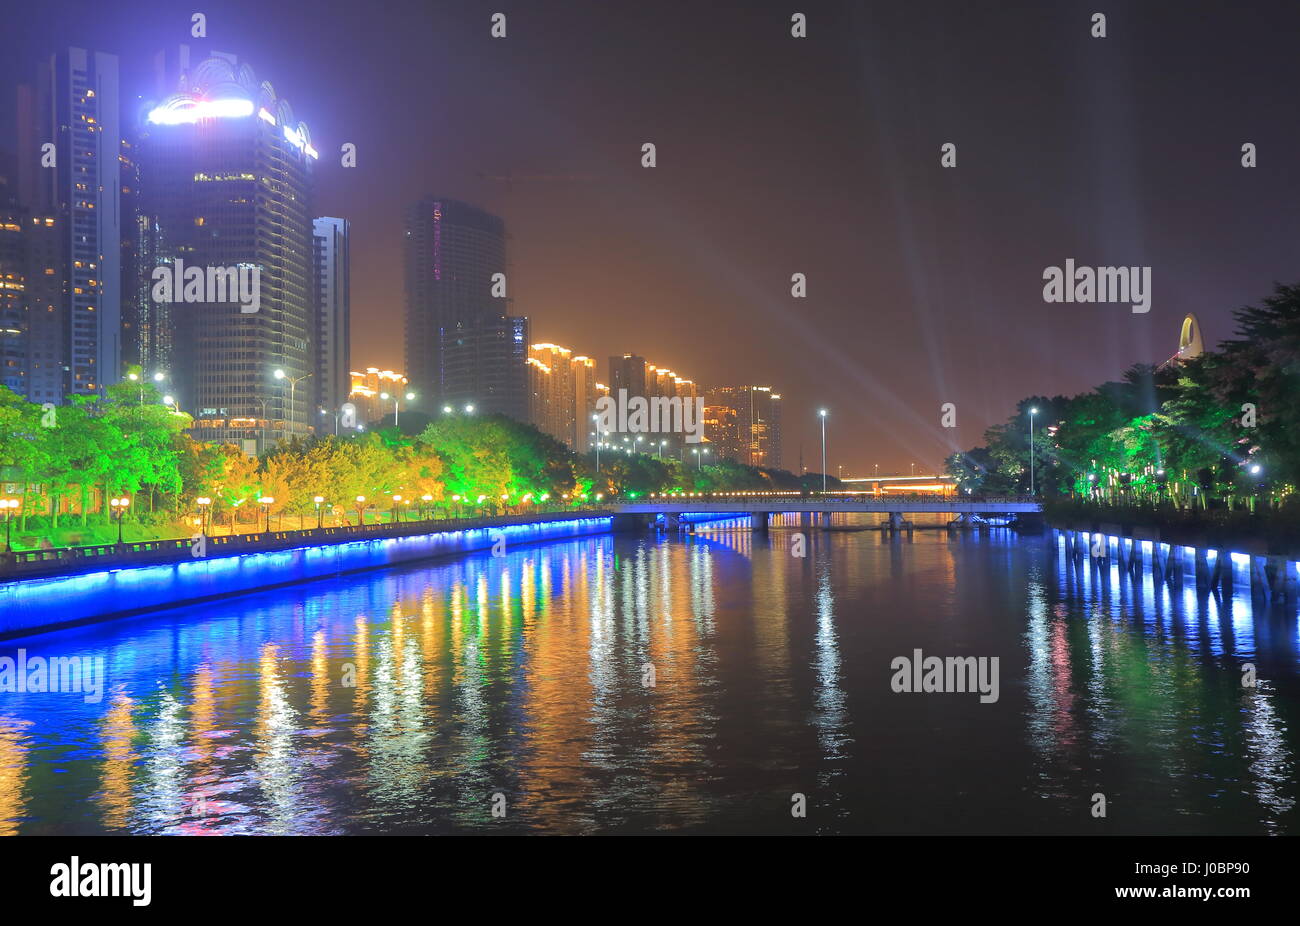 La nuit de la rivière Zhujiang cityscape in Guangzhou Chine Banque D'Images